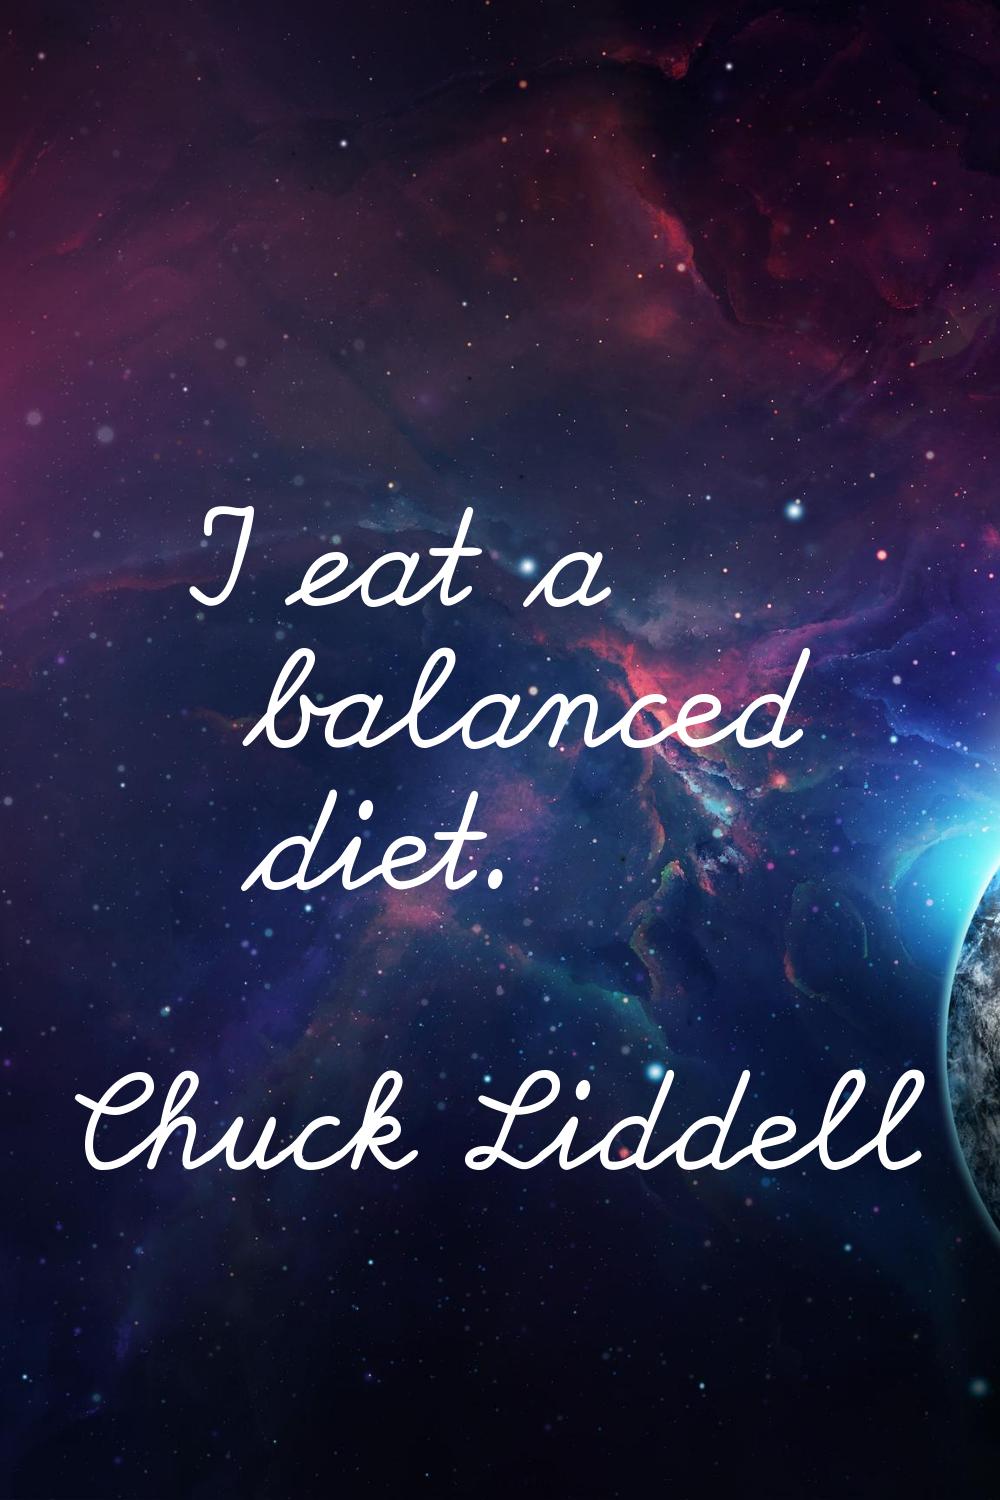 I eat a balanced diet.